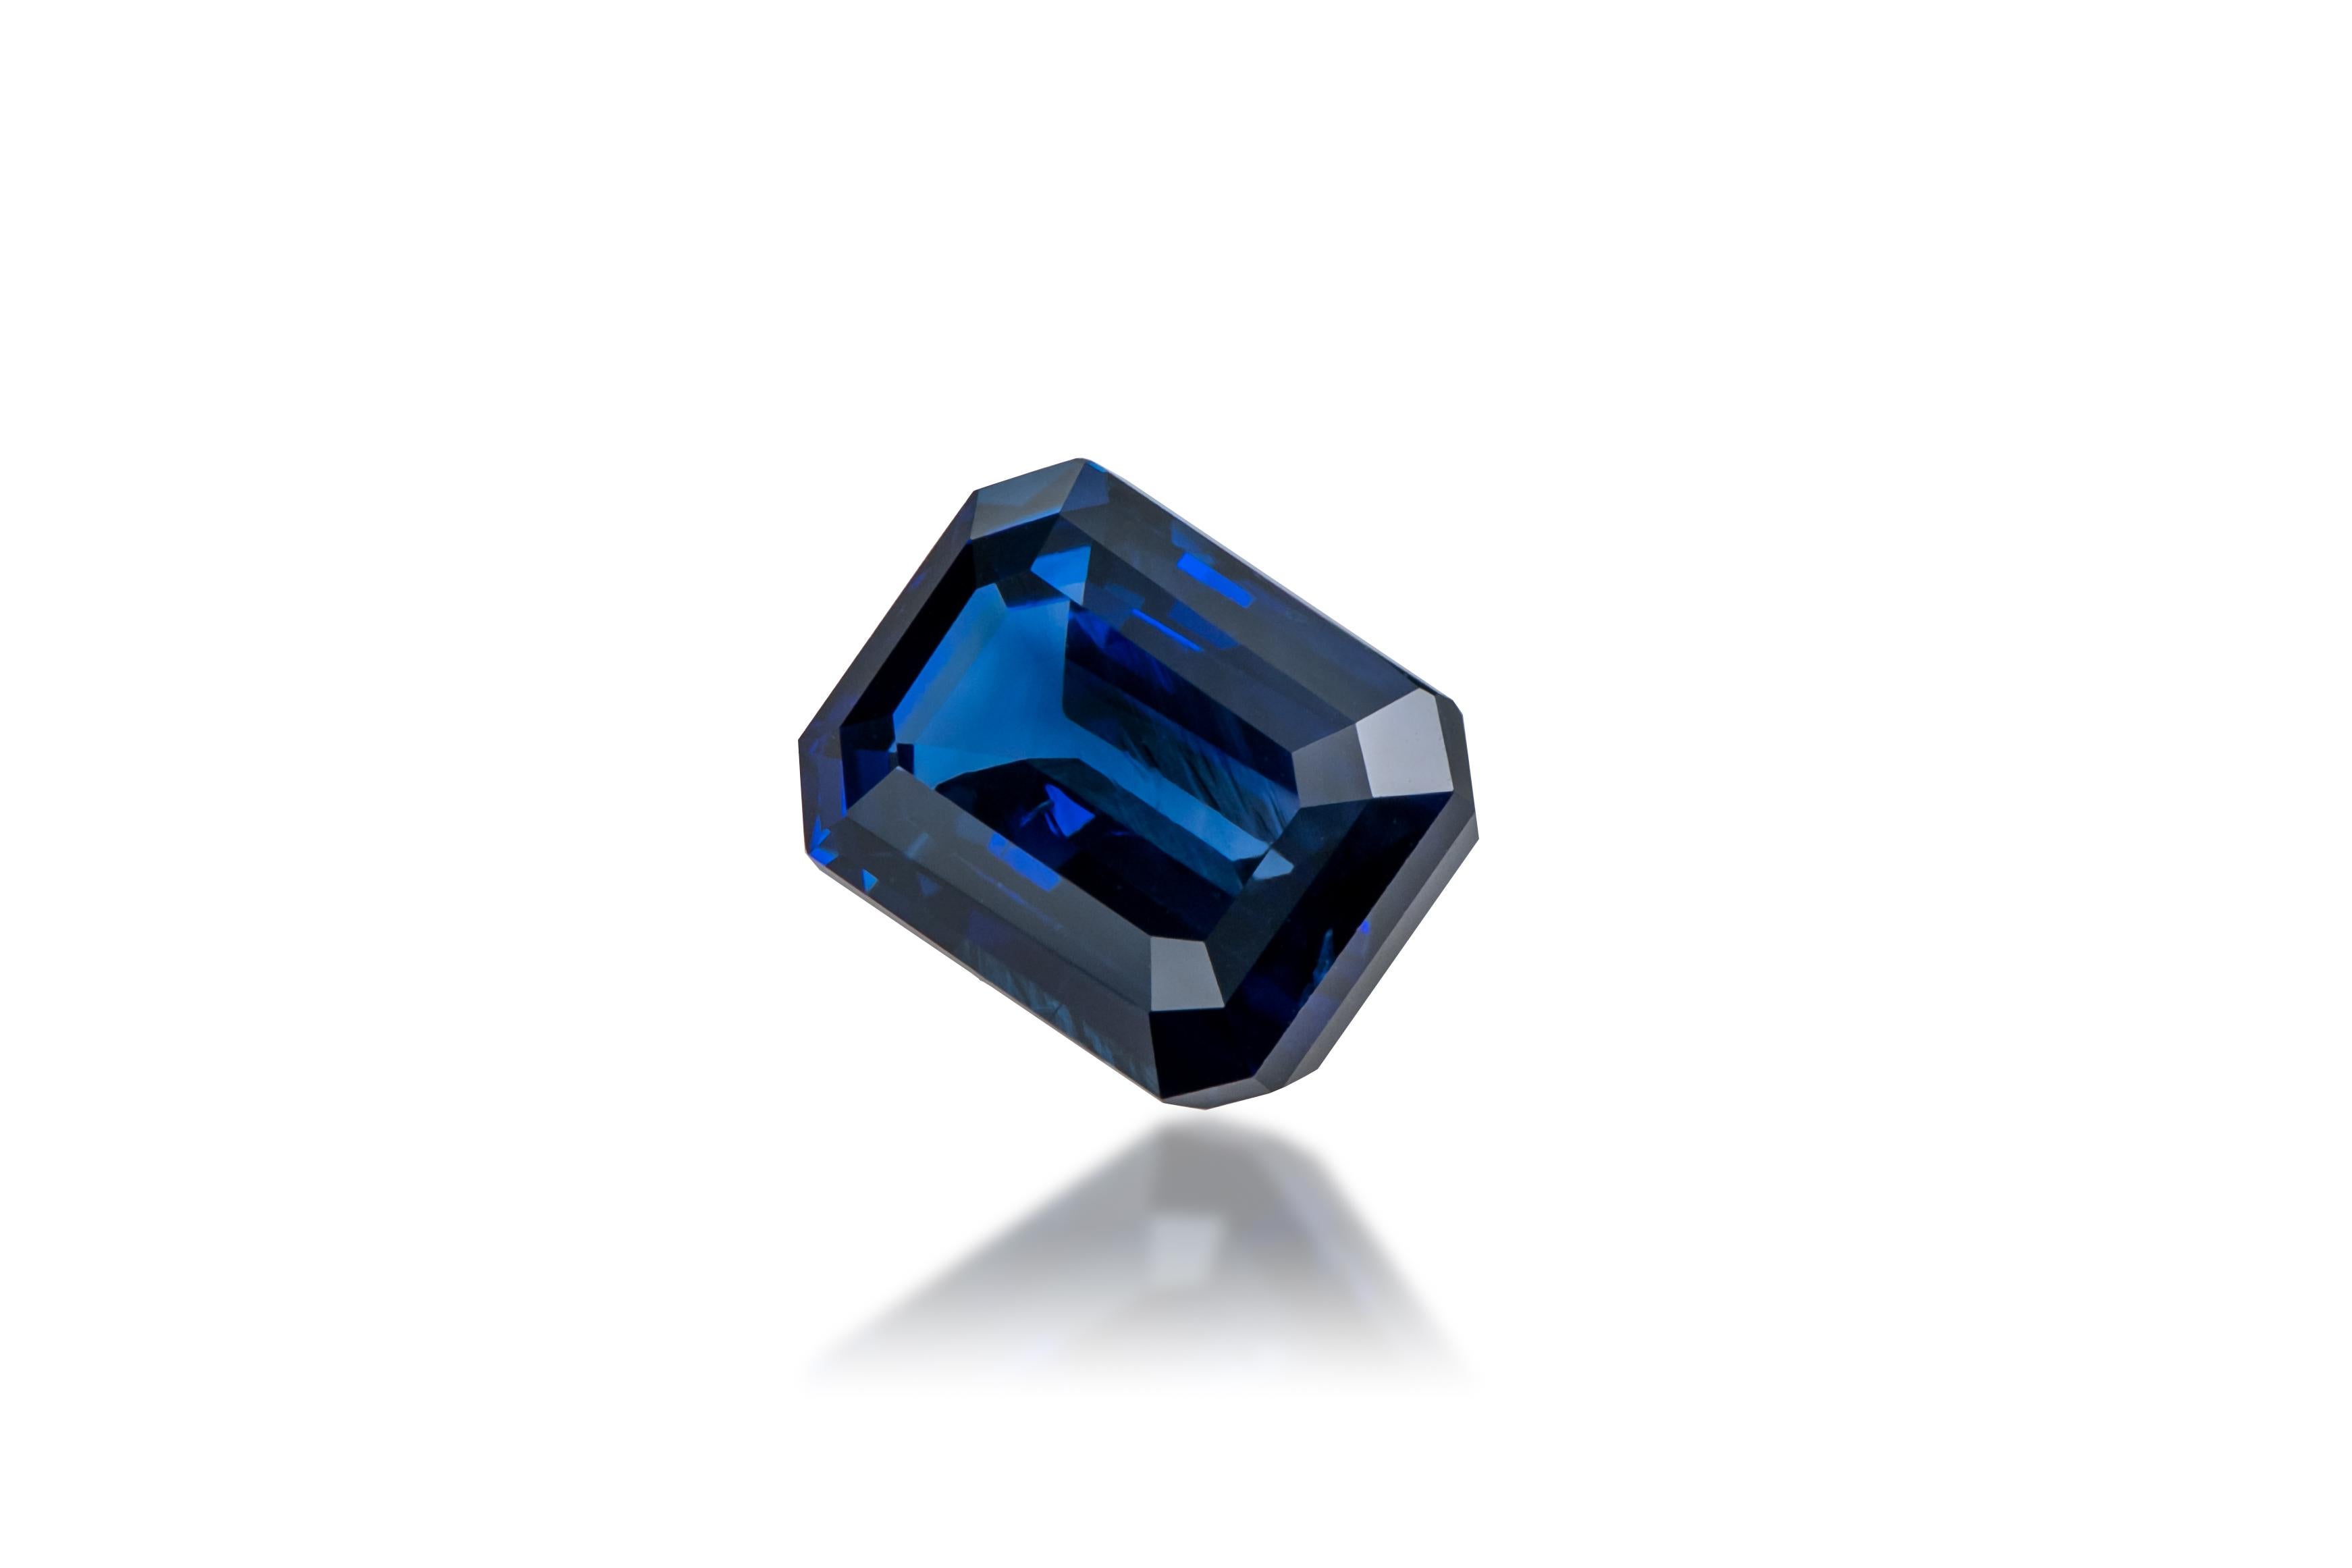 Saphir : Saphir bleu vif/royal
Origine : Sri Lanka
Forme : Coupe octogonale
Poids en carats : 4,00 cts
Dimensions : 10,26 x 7,32 x 4,64 mm : 10,26 x 7,32 x 4,64 mm

Ce magnifique saphir Vivid/Royal a une belle couleur bleue et n'est pas chauffé.
Il